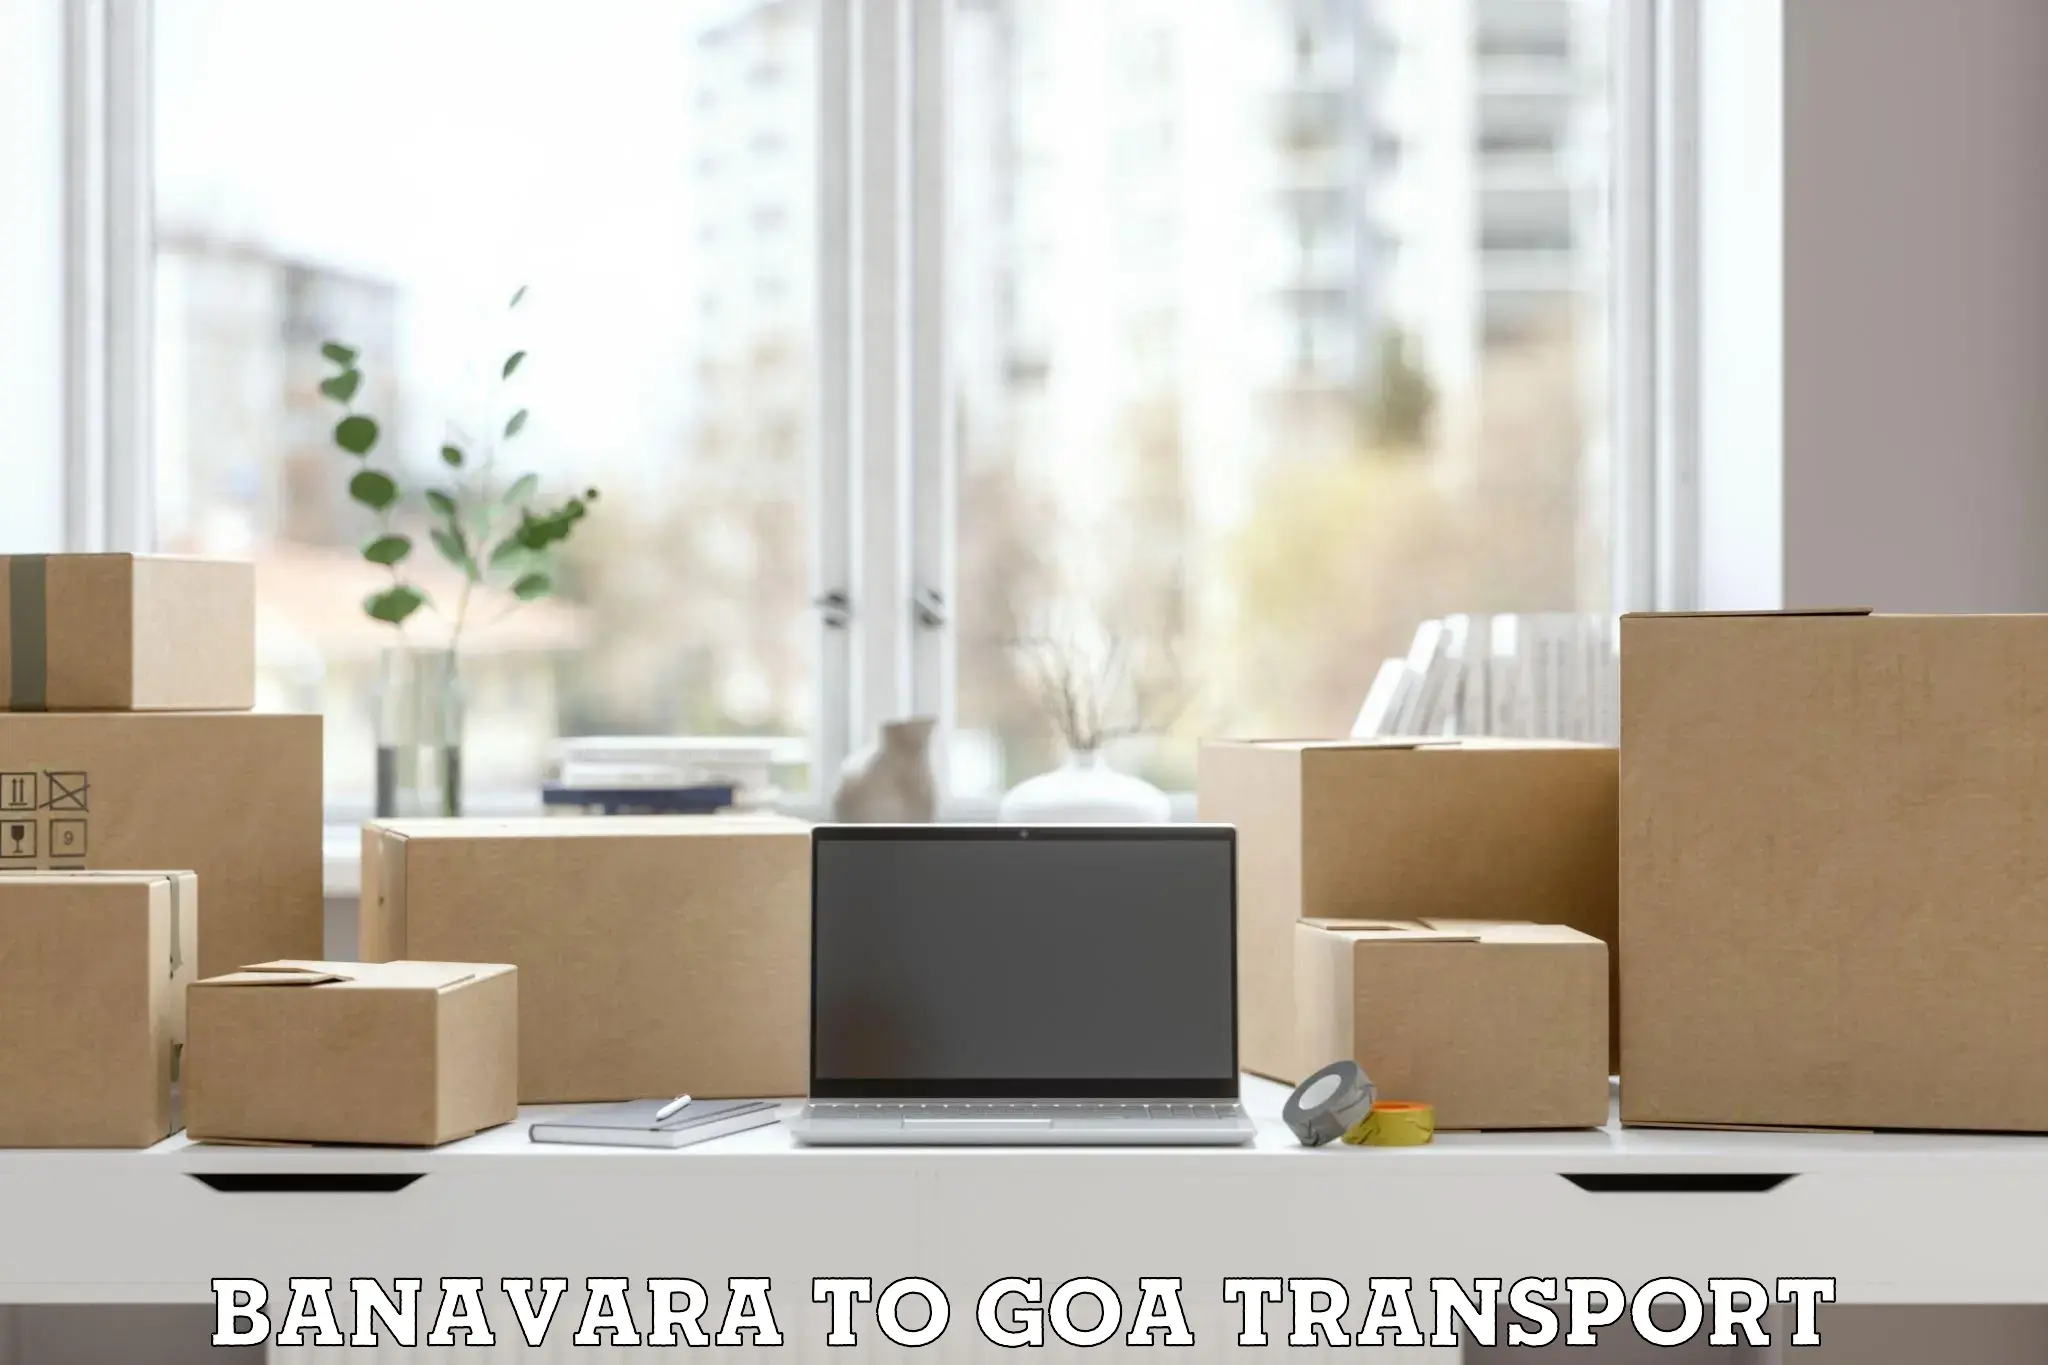 Daily transport service Banavara to Goa